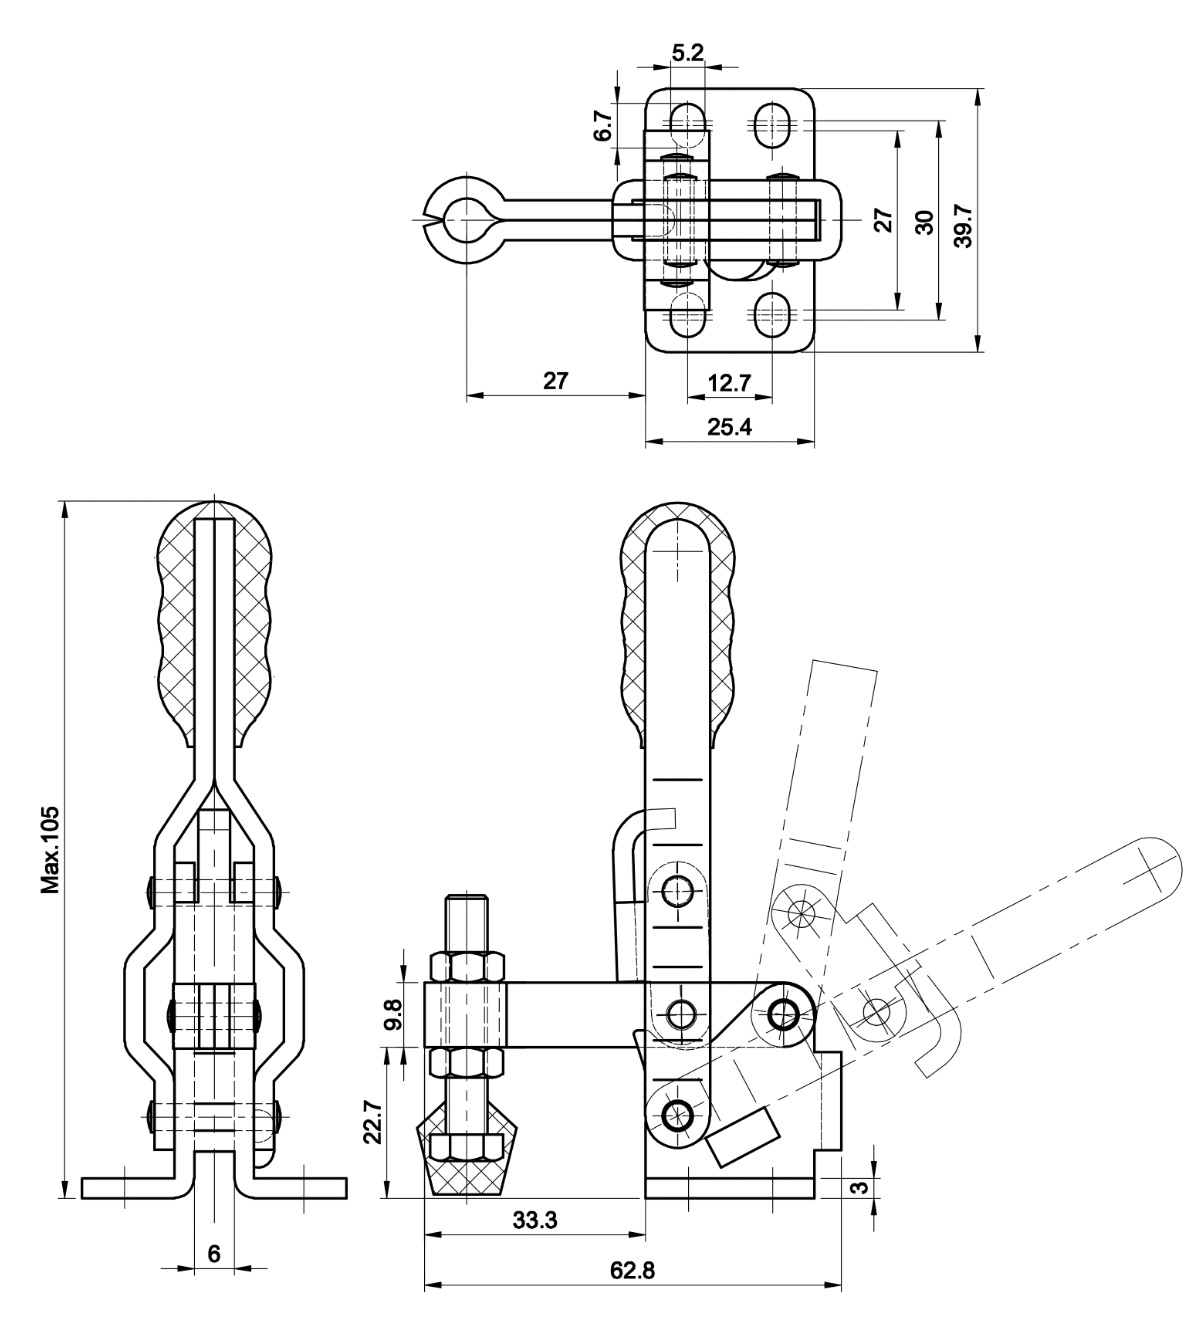 DST-12050 Technische Zeichnung Senkrechtspanner Vertikalspanner waagrechter Fuss 910N